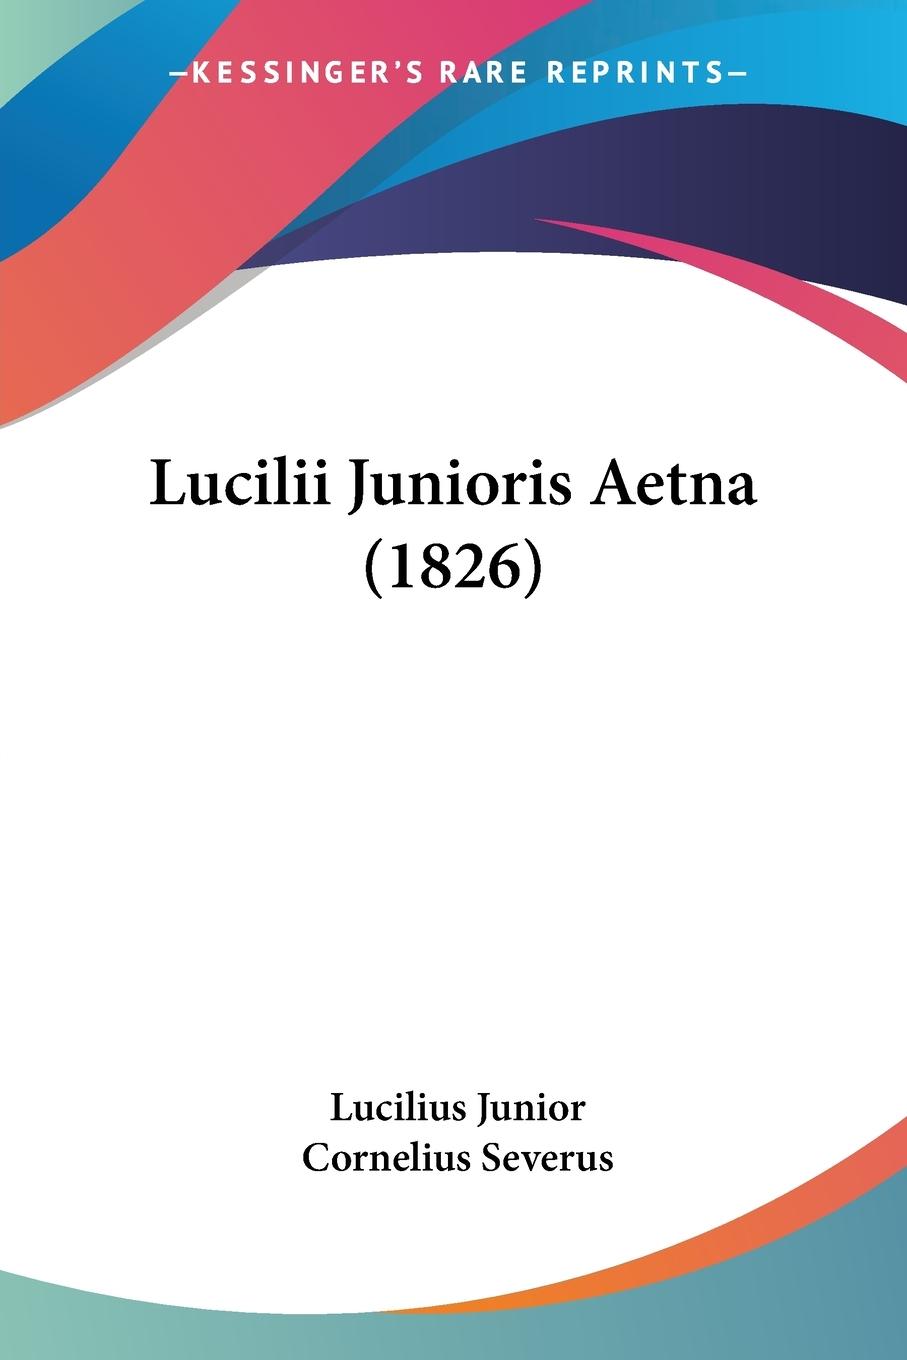 Lucilii Junioris Aetna (1826) - Junior, Lucilius Severus, Cornelius